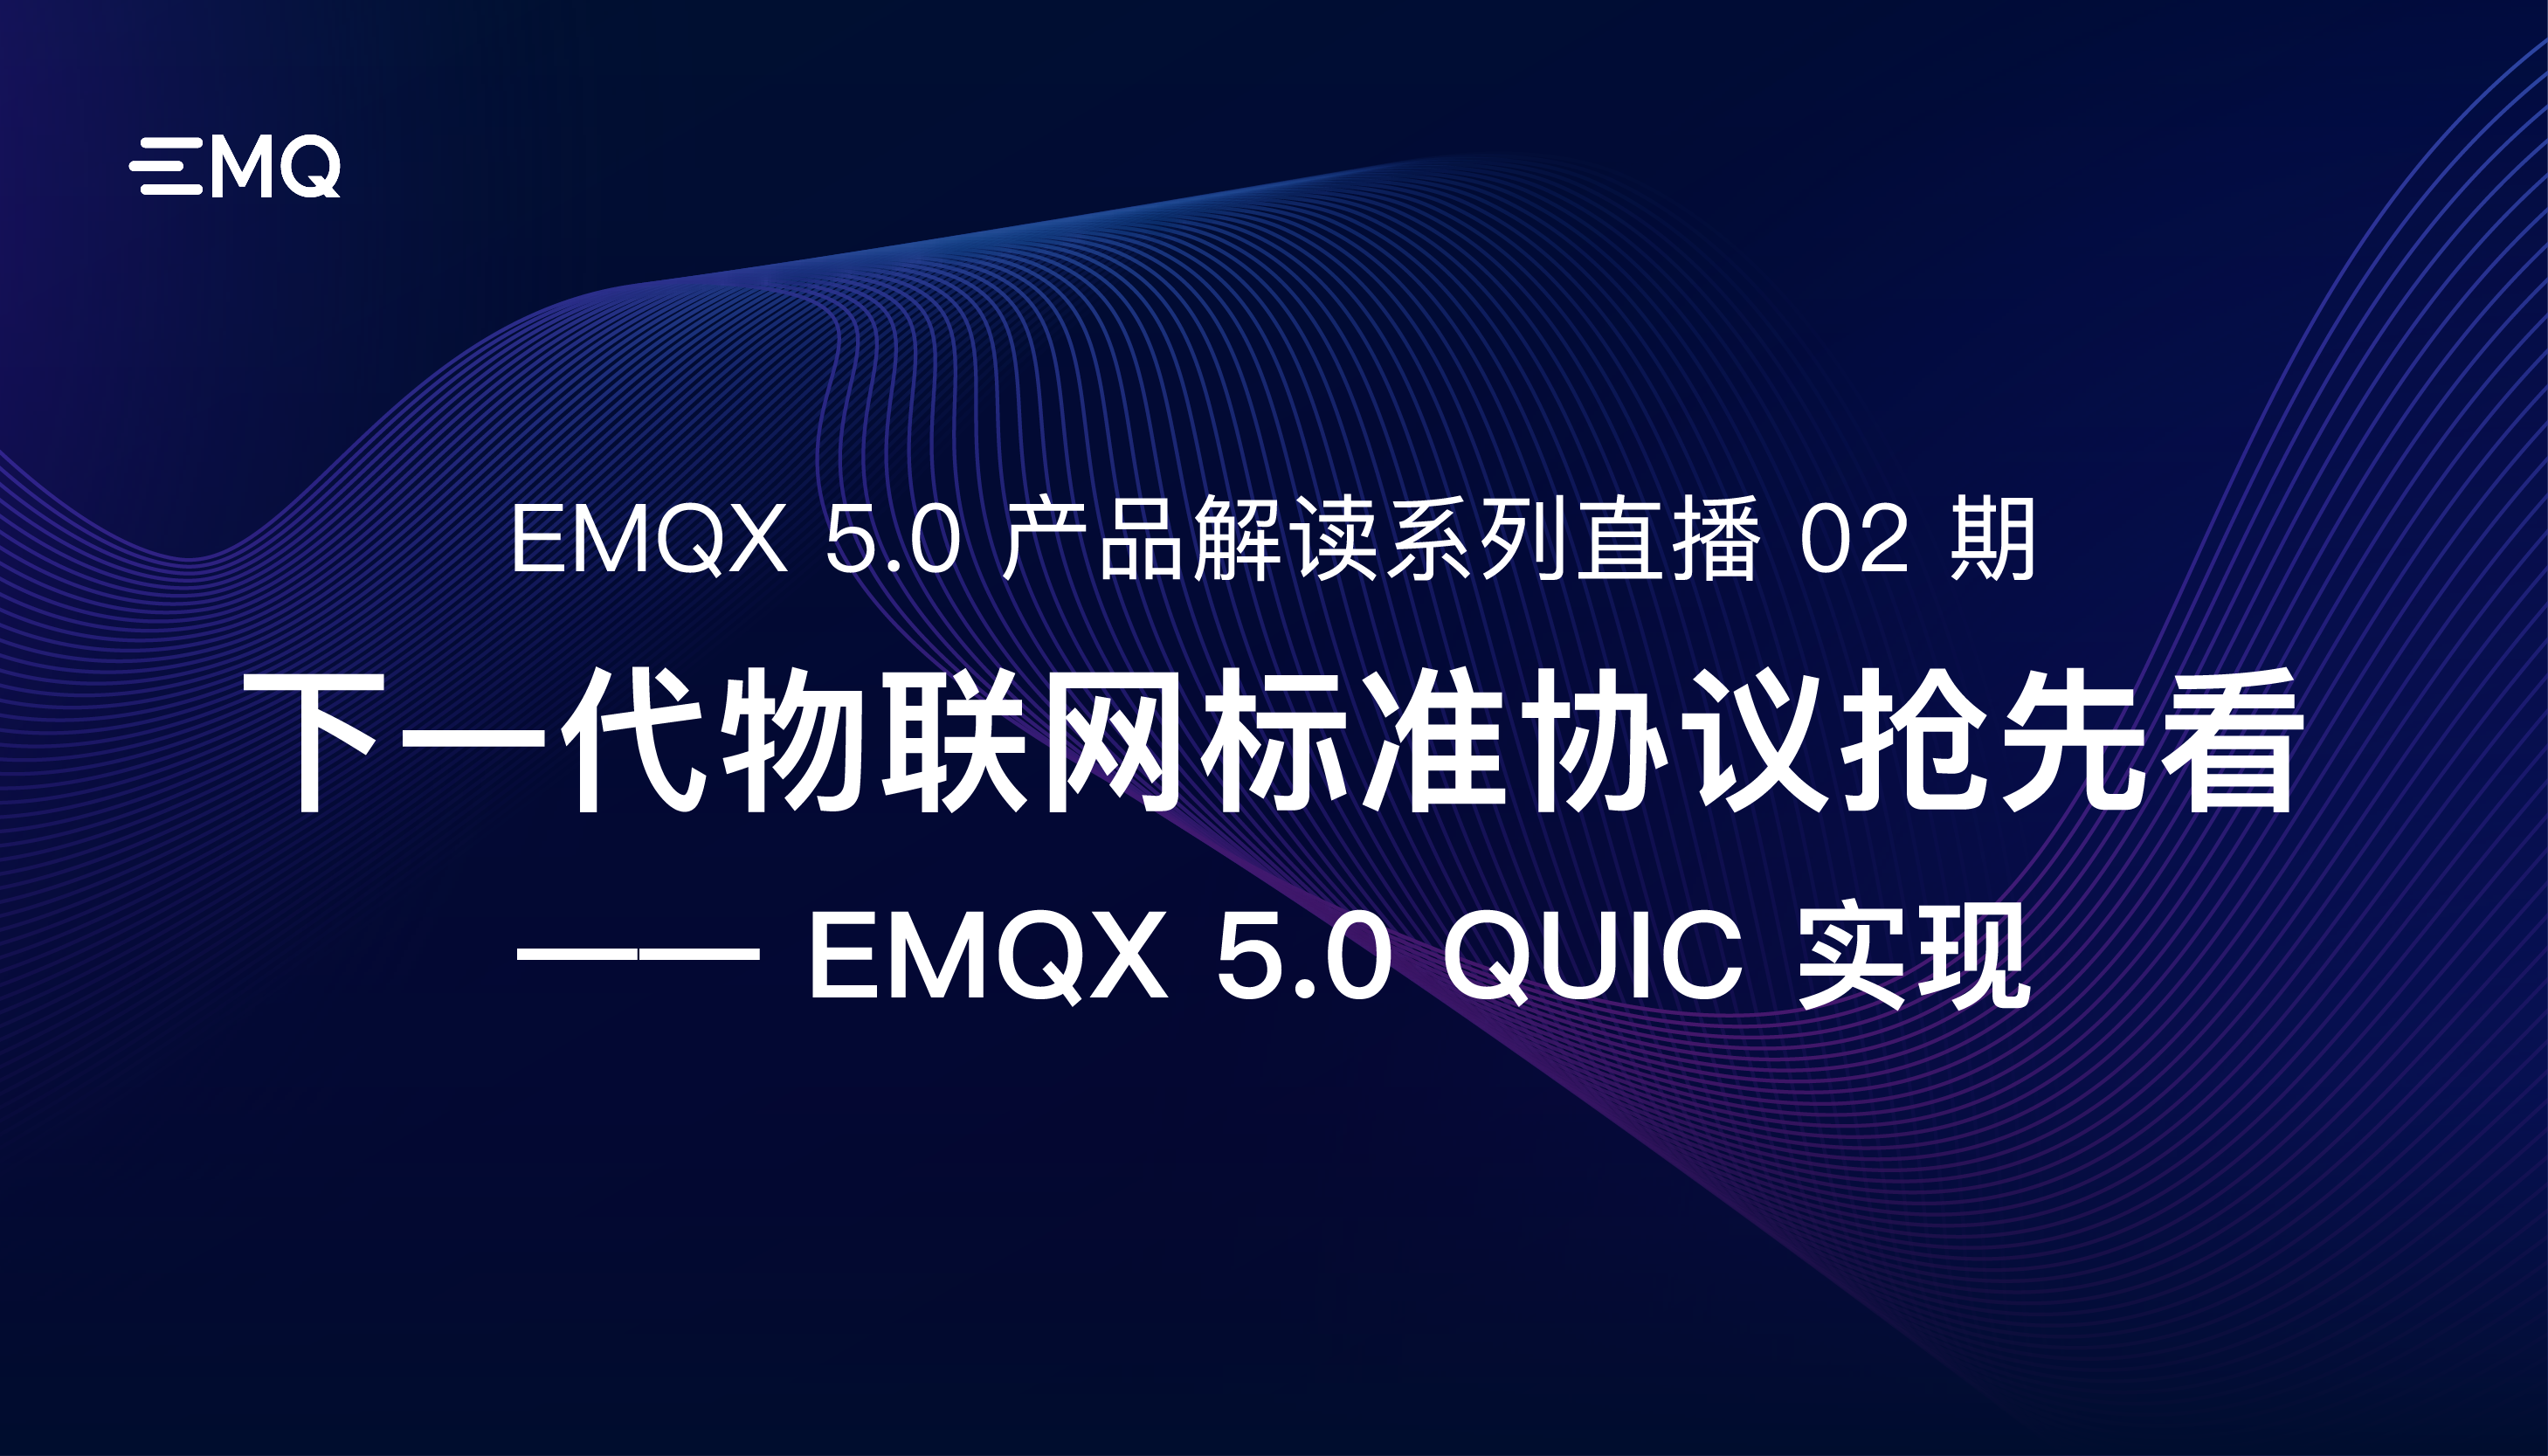 下一代物联网标准协议抢先看：EMQX 5.0 MQTT over QUIC 实现